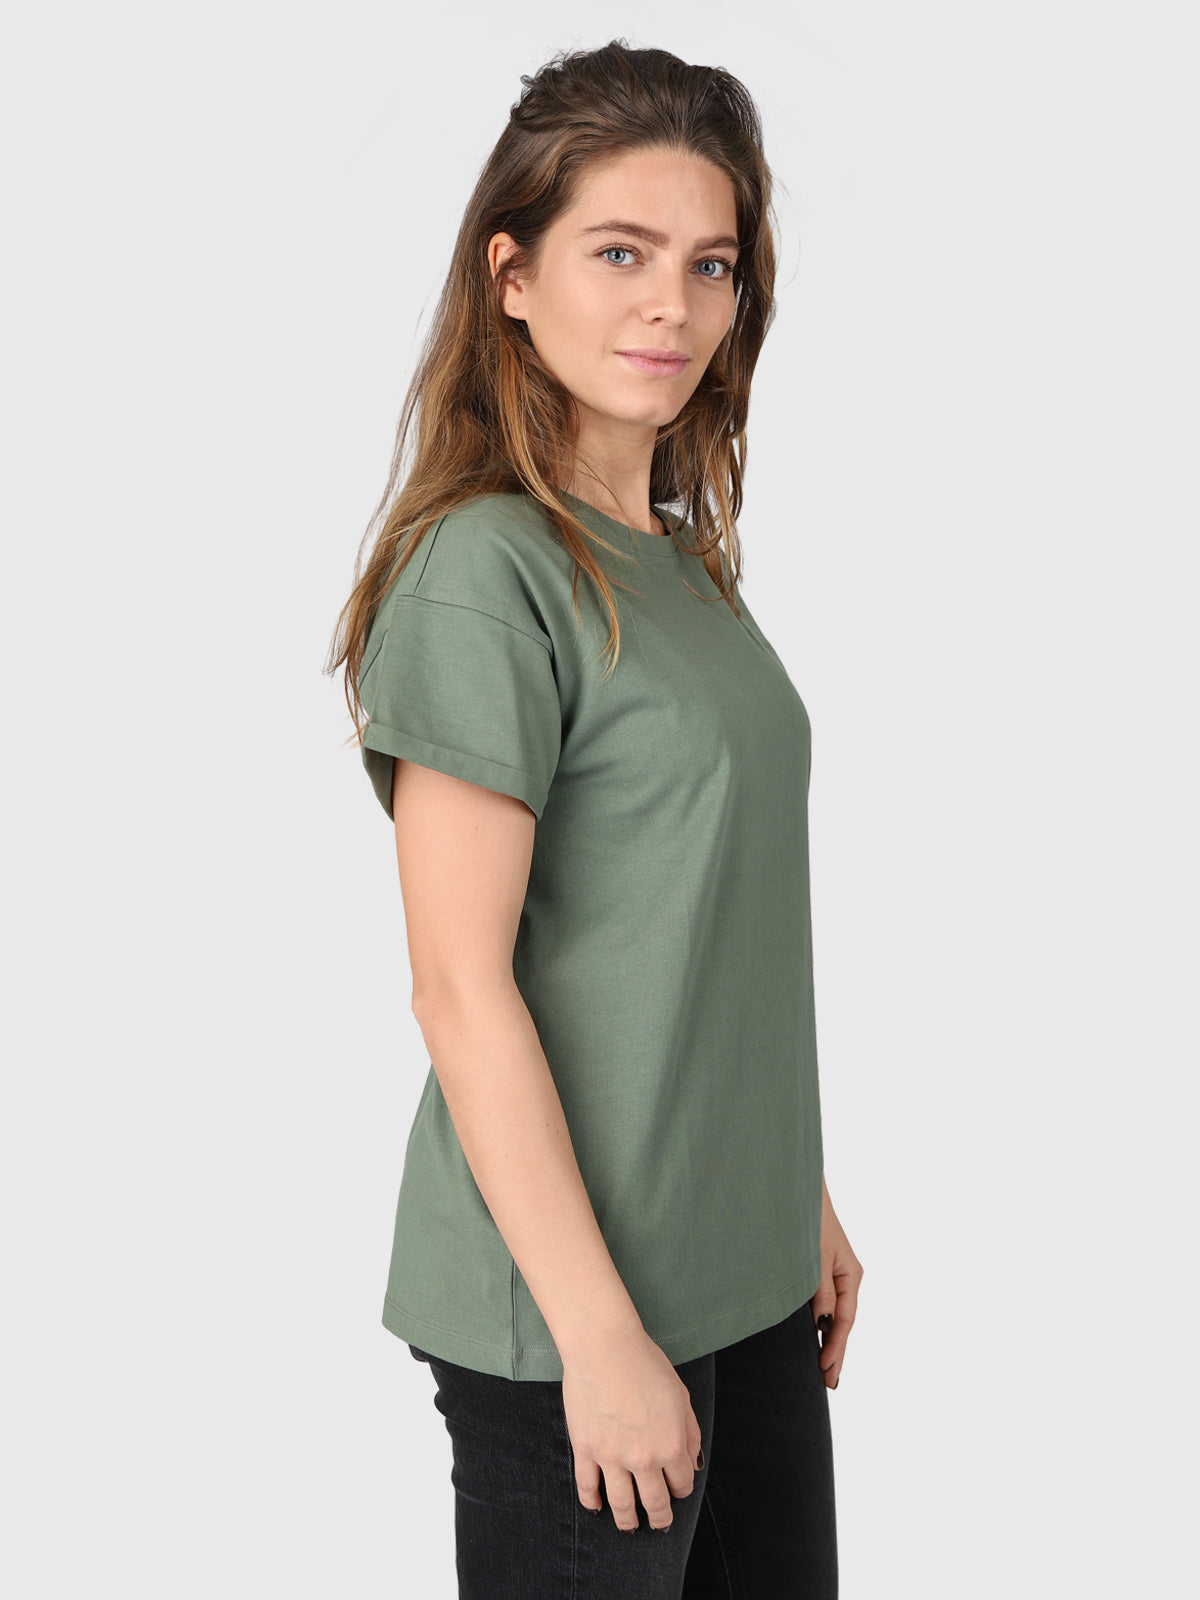 Samira-R Damen T-Shirt | Grün